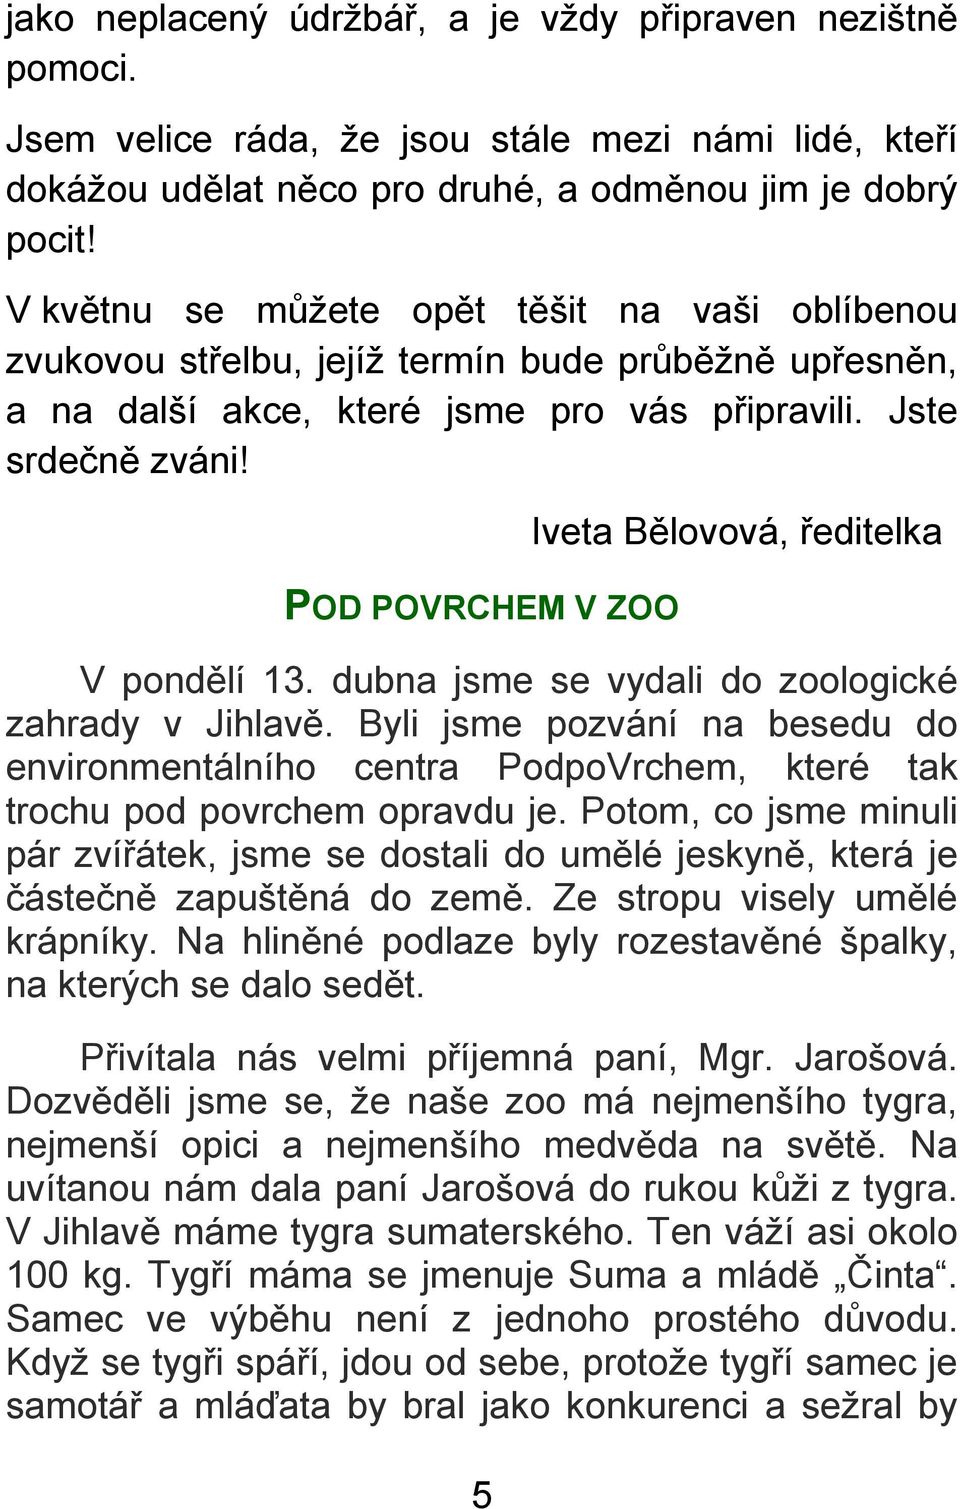 POD POVRCHEM V ZOO 5 Iveta Bělovová, ředitelka V pondělí 13. dubna jsme se vydali do zoologické zahrady v Jihlavě.